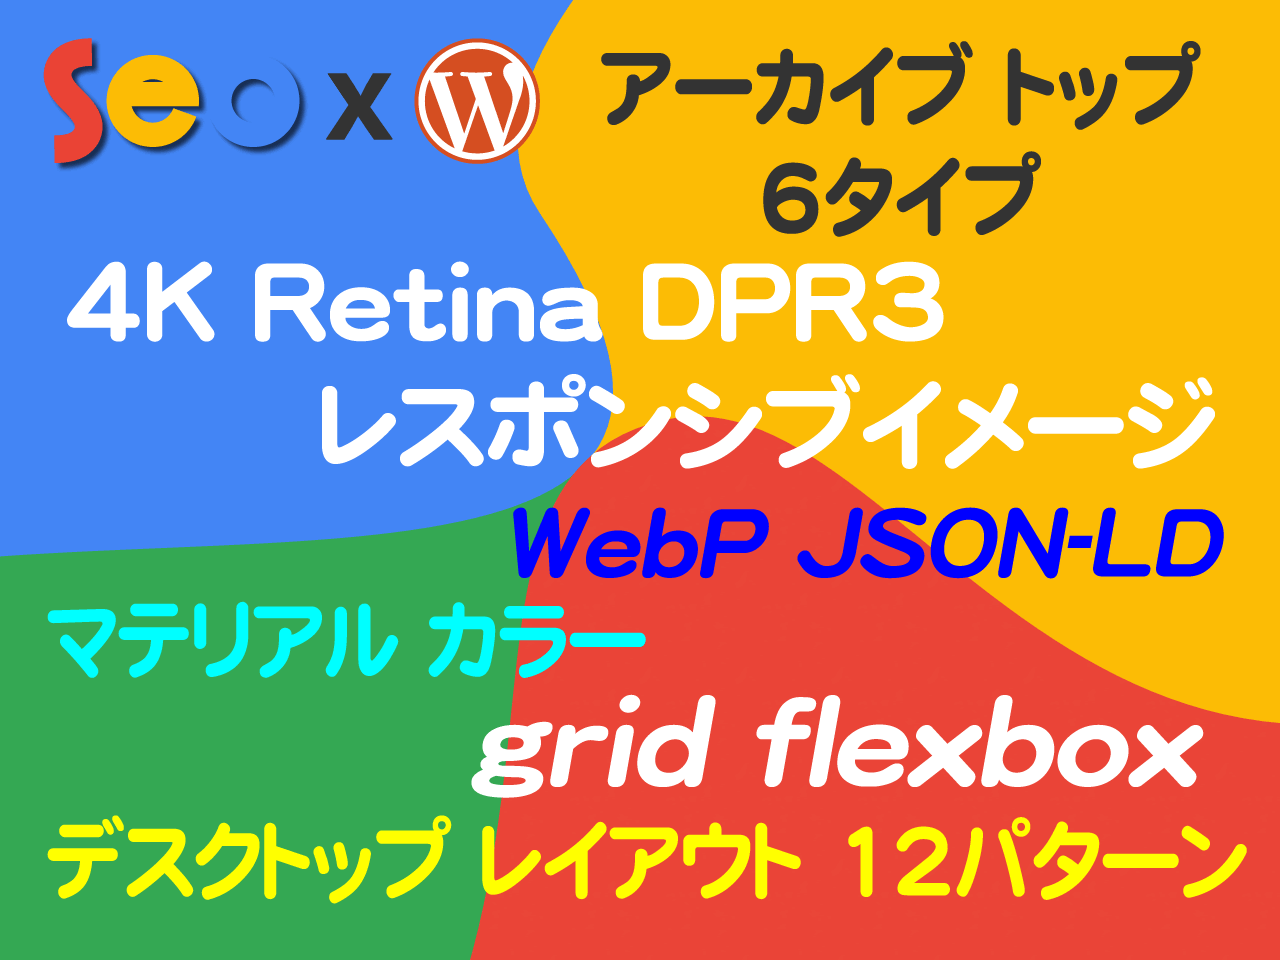 新テーマ アピールポイント モバイルファースト・最新HTML/CSS3・スマホアプリ・WebP・JSON-LD・4K(Retina)・マテリアルデザイン・grid/flexbox 